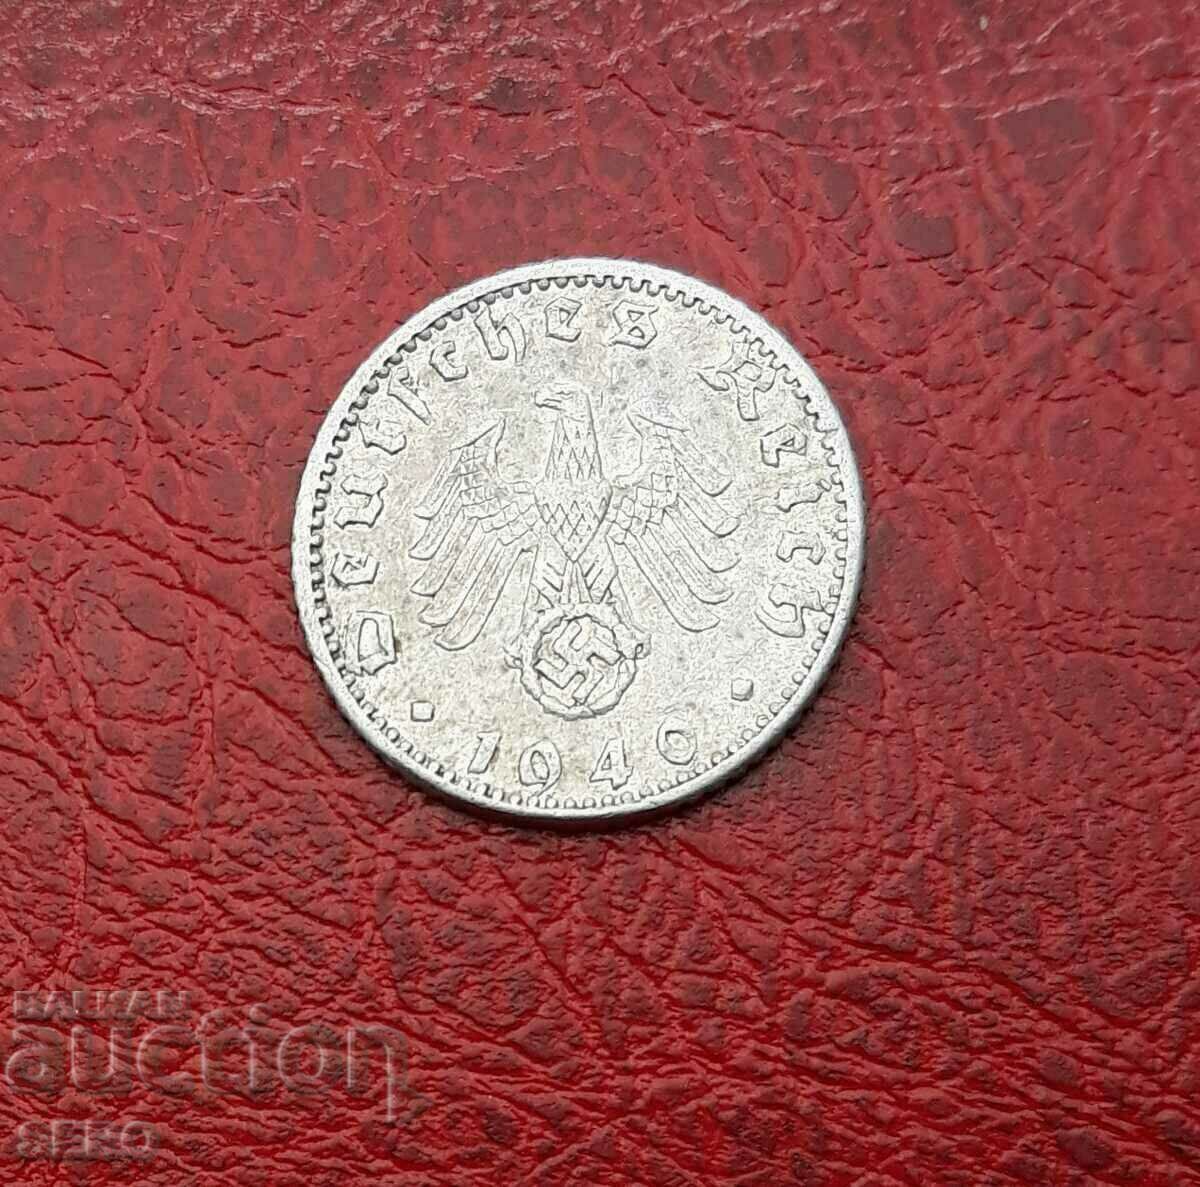 Germany-50 Pfennig 1940 A-Berlin